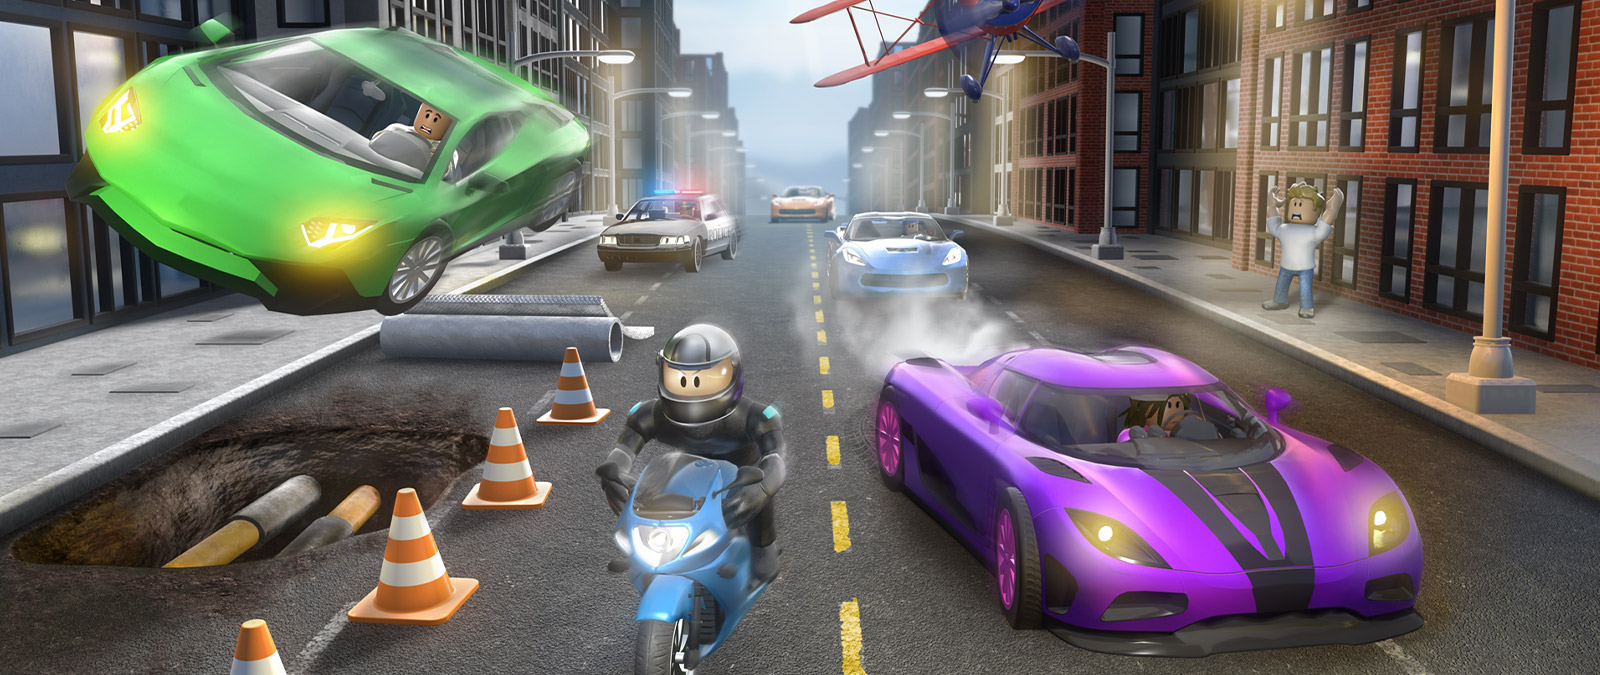 Χαρακτήρας από το παιχνίδι Vehicle Simulator του Roblox πάνω σε μια μοτοσυκλέτα που τον κυνηγούν άλλα οχήματα σε έναν δρόμο της πόλης